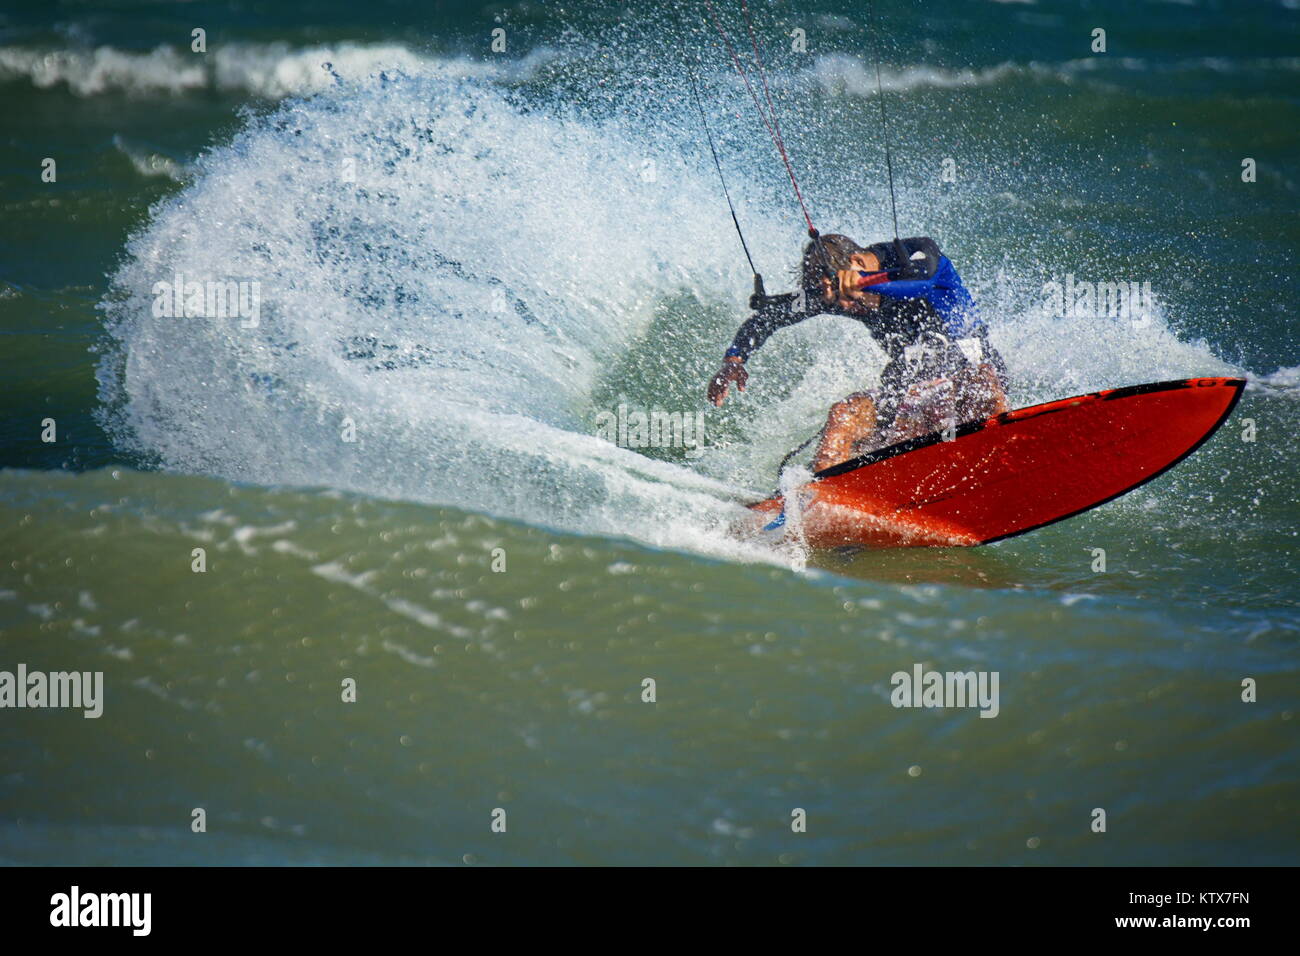 Surfer les vagues sur une planche de kitesurf avec une grande éclaboussure Banque D'Images